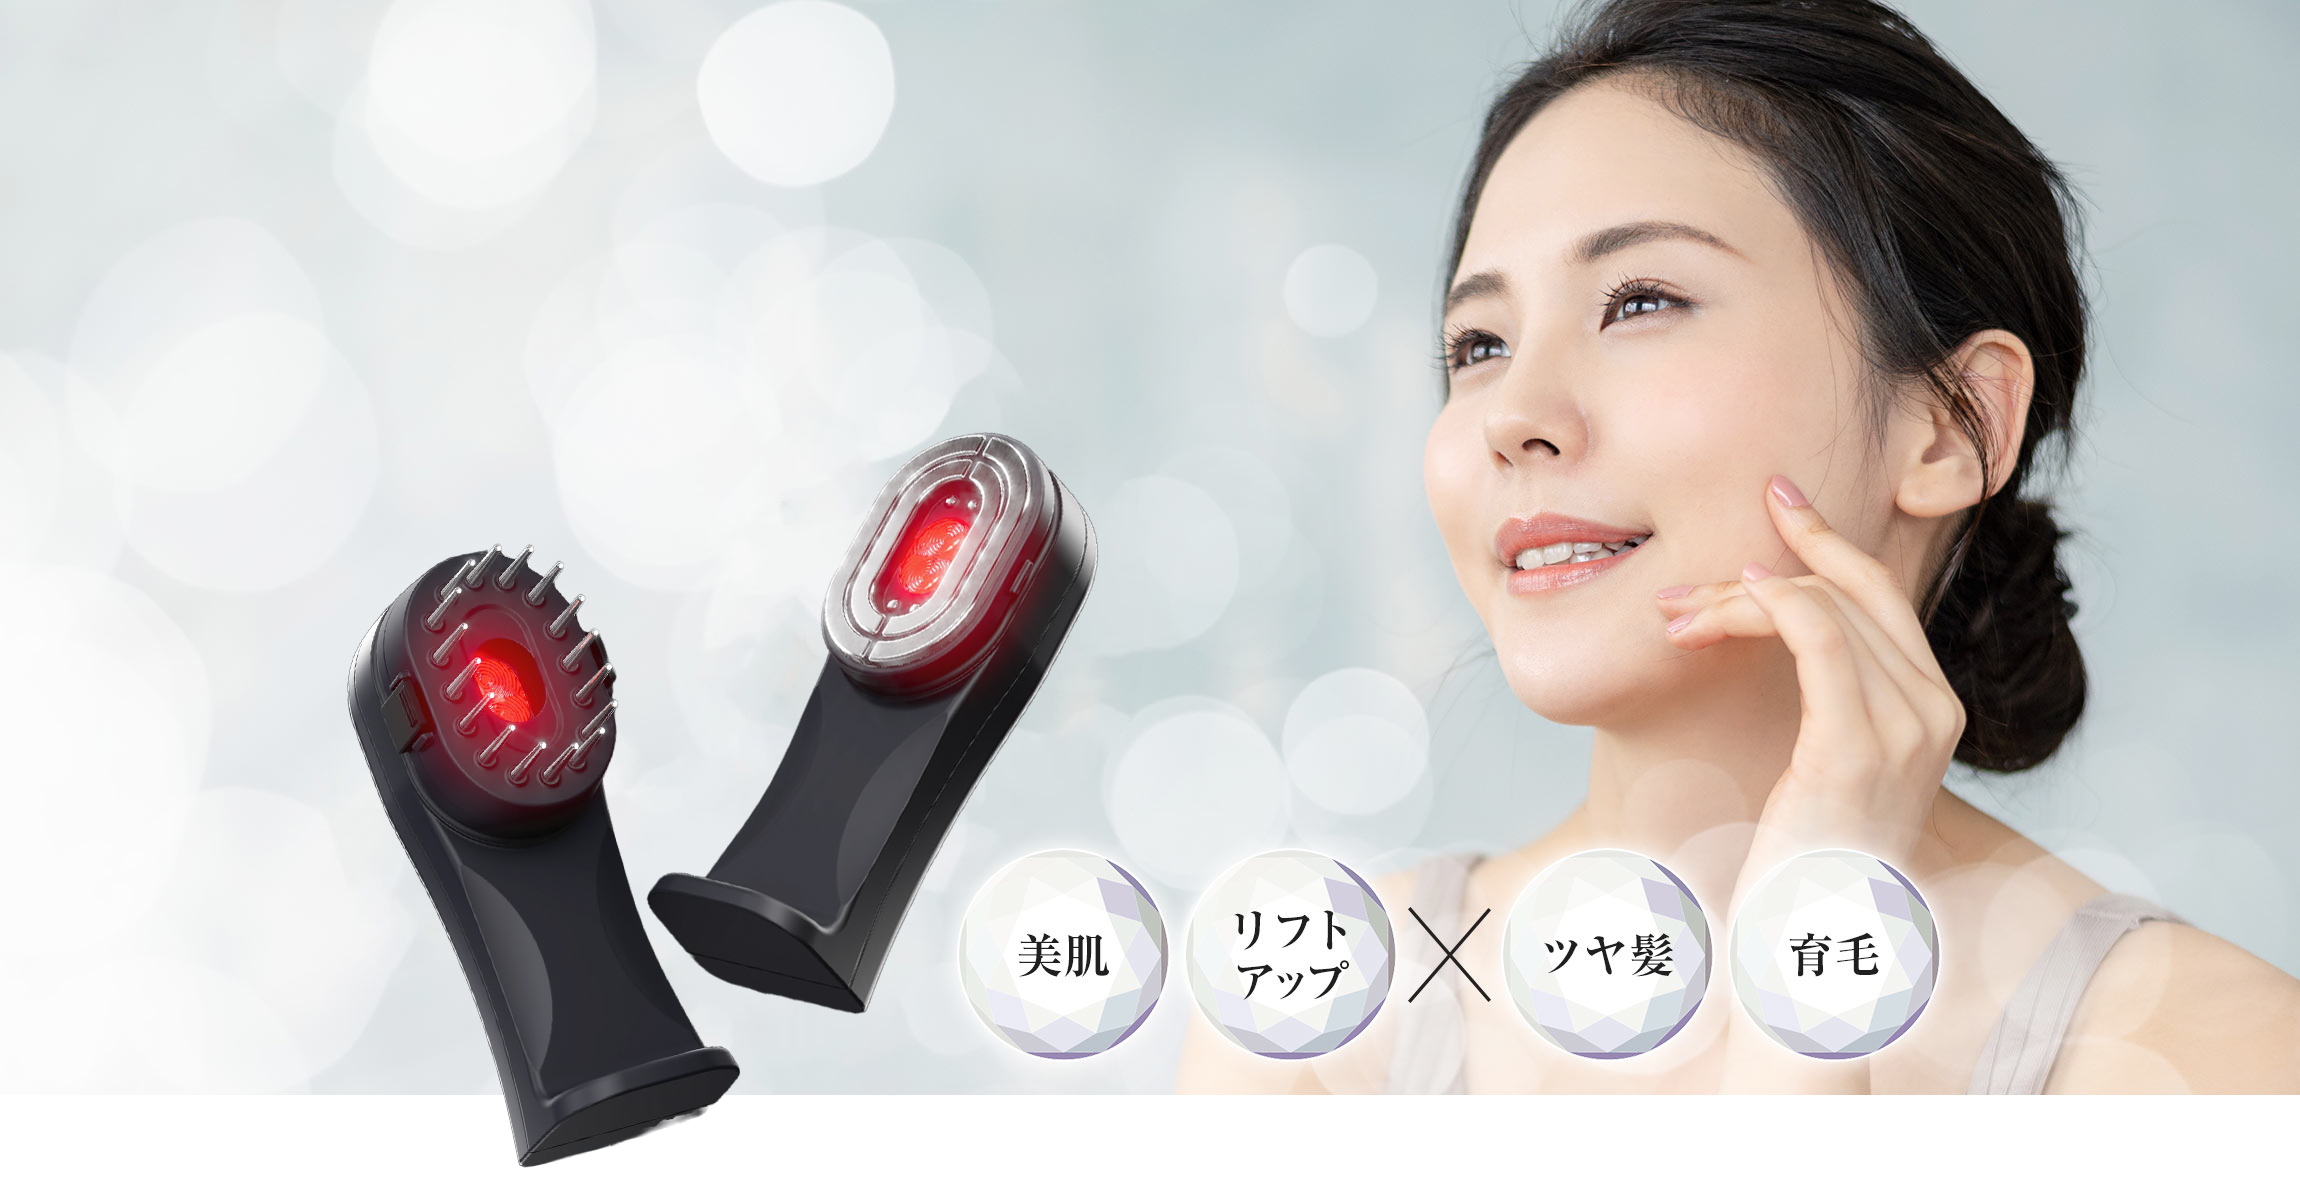 美容/健康 美容機器 多機能美顔器TILLET（ティレット）を月6,980円でお試し|買う前に試せる 